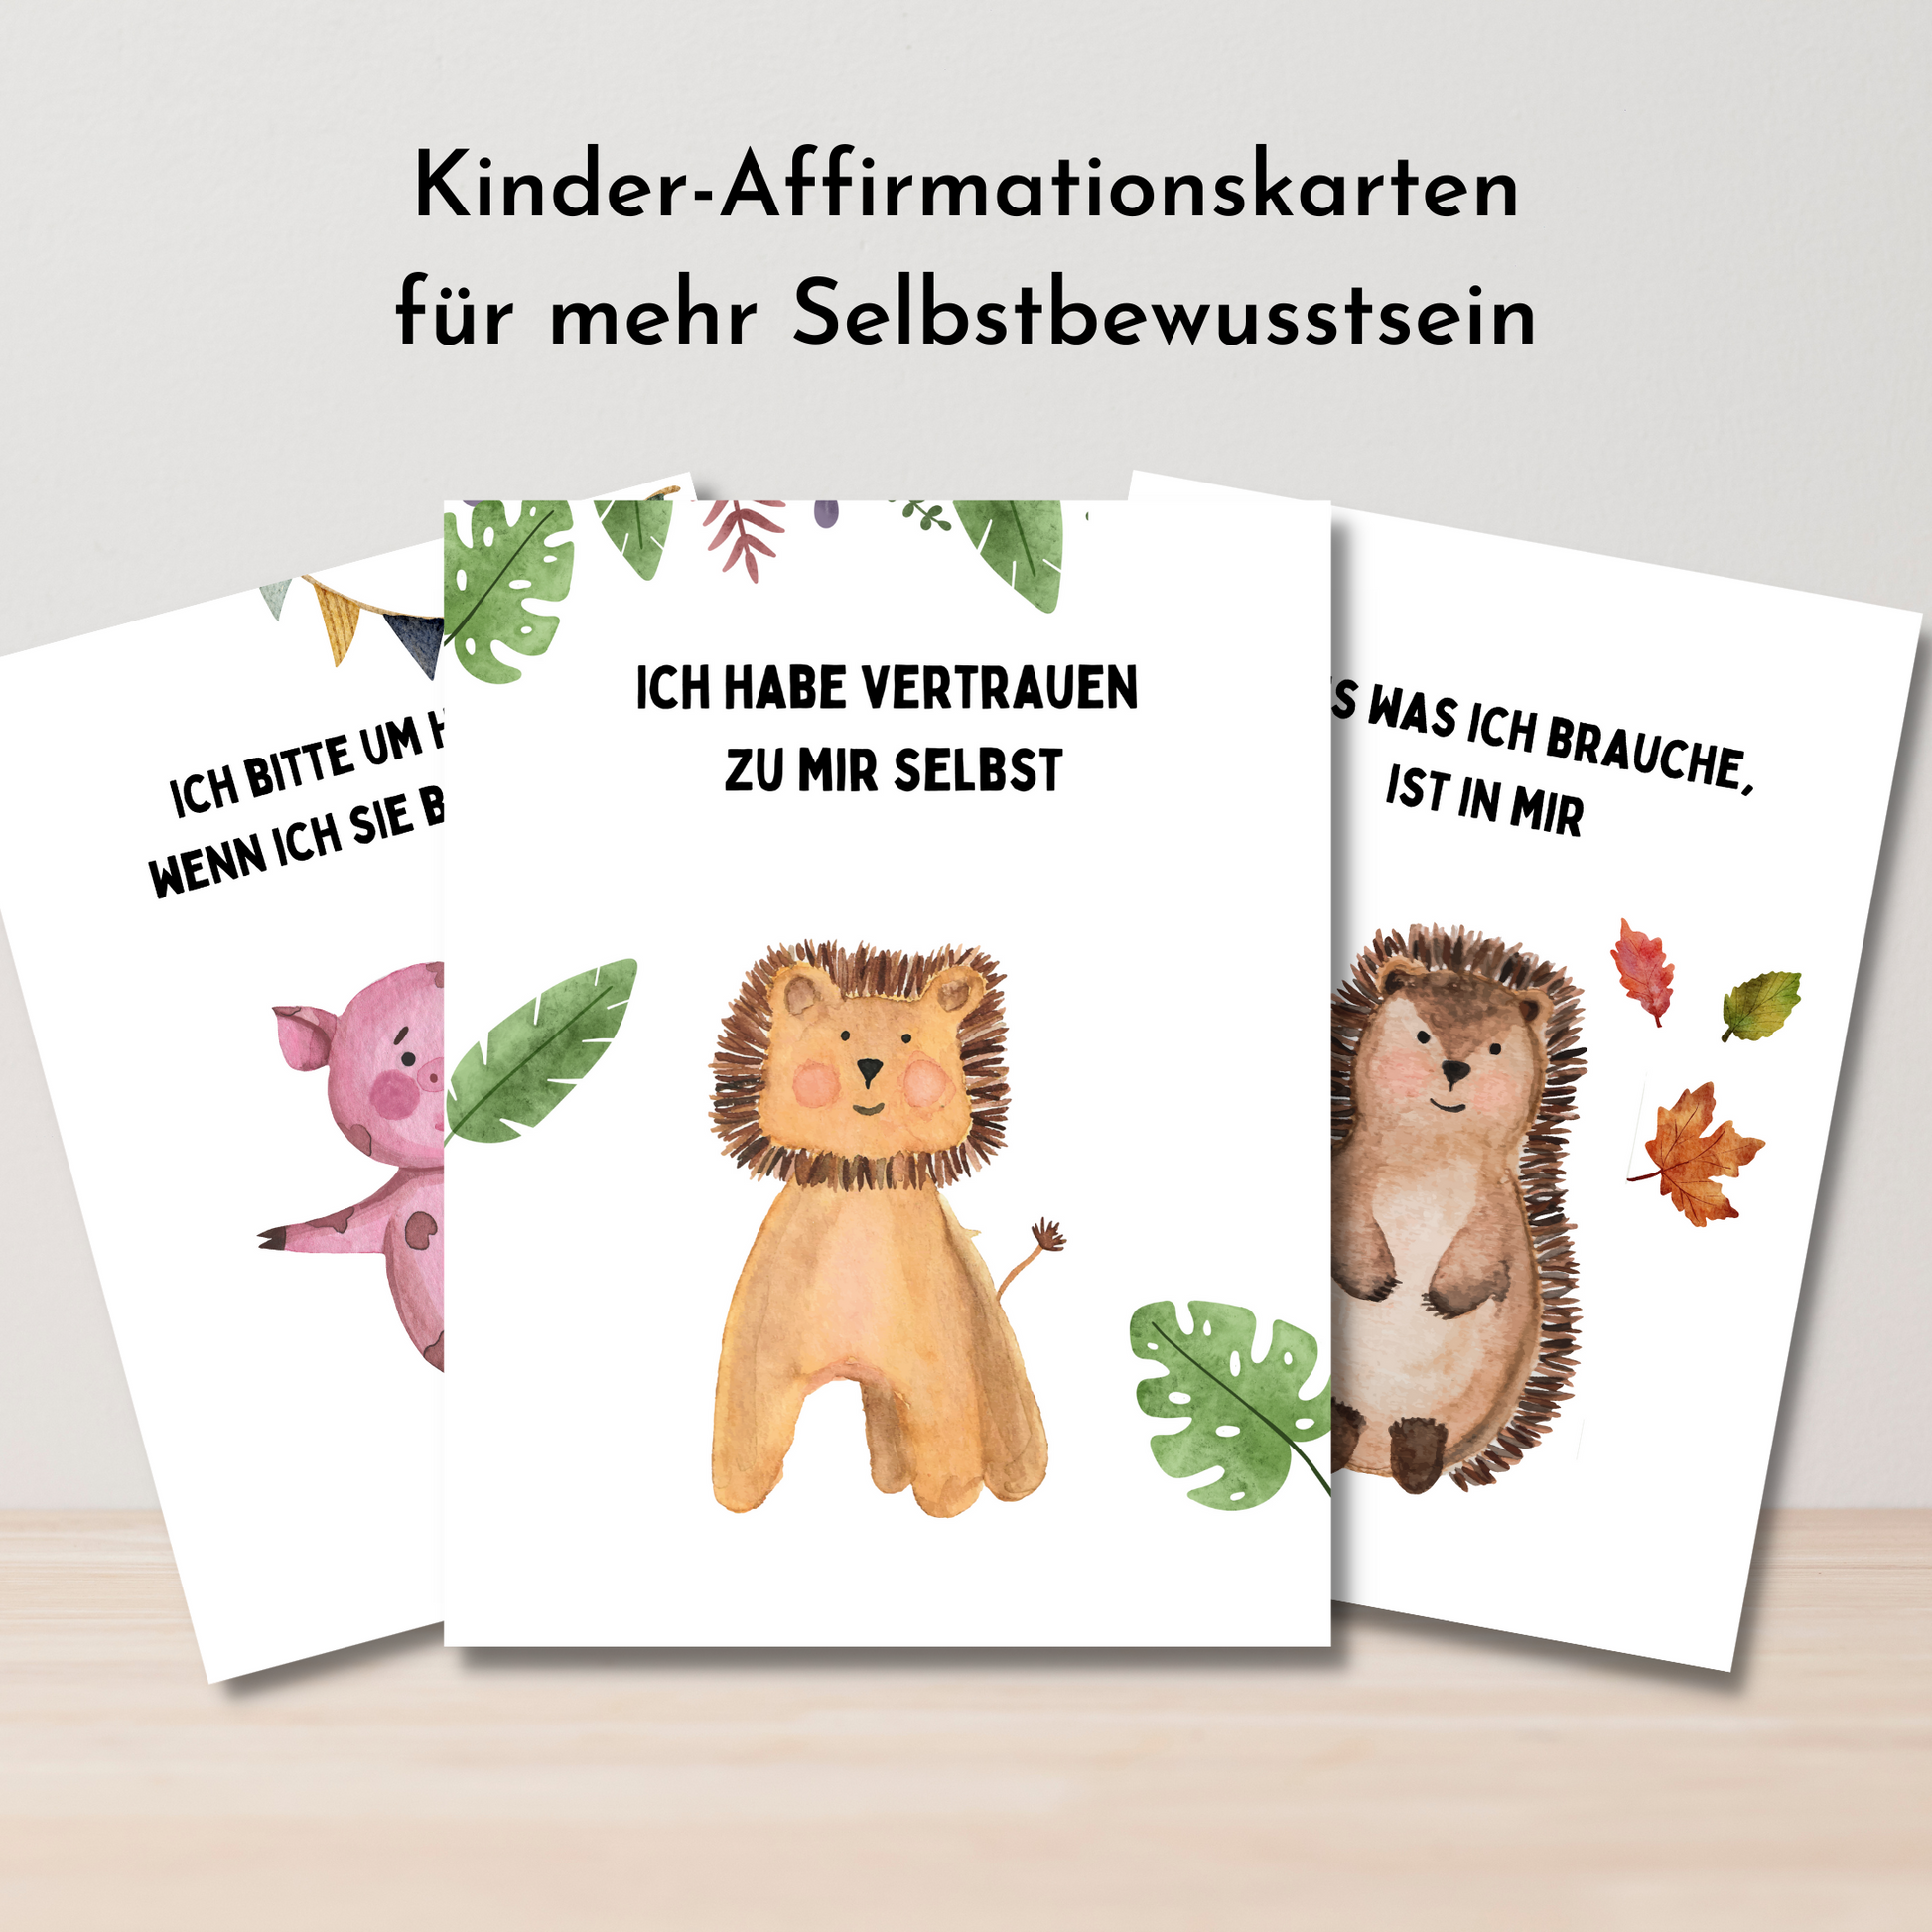 Kinder-Affirmationskarten - Positives Denken und Selbstbewusstsein spielerisch fördern